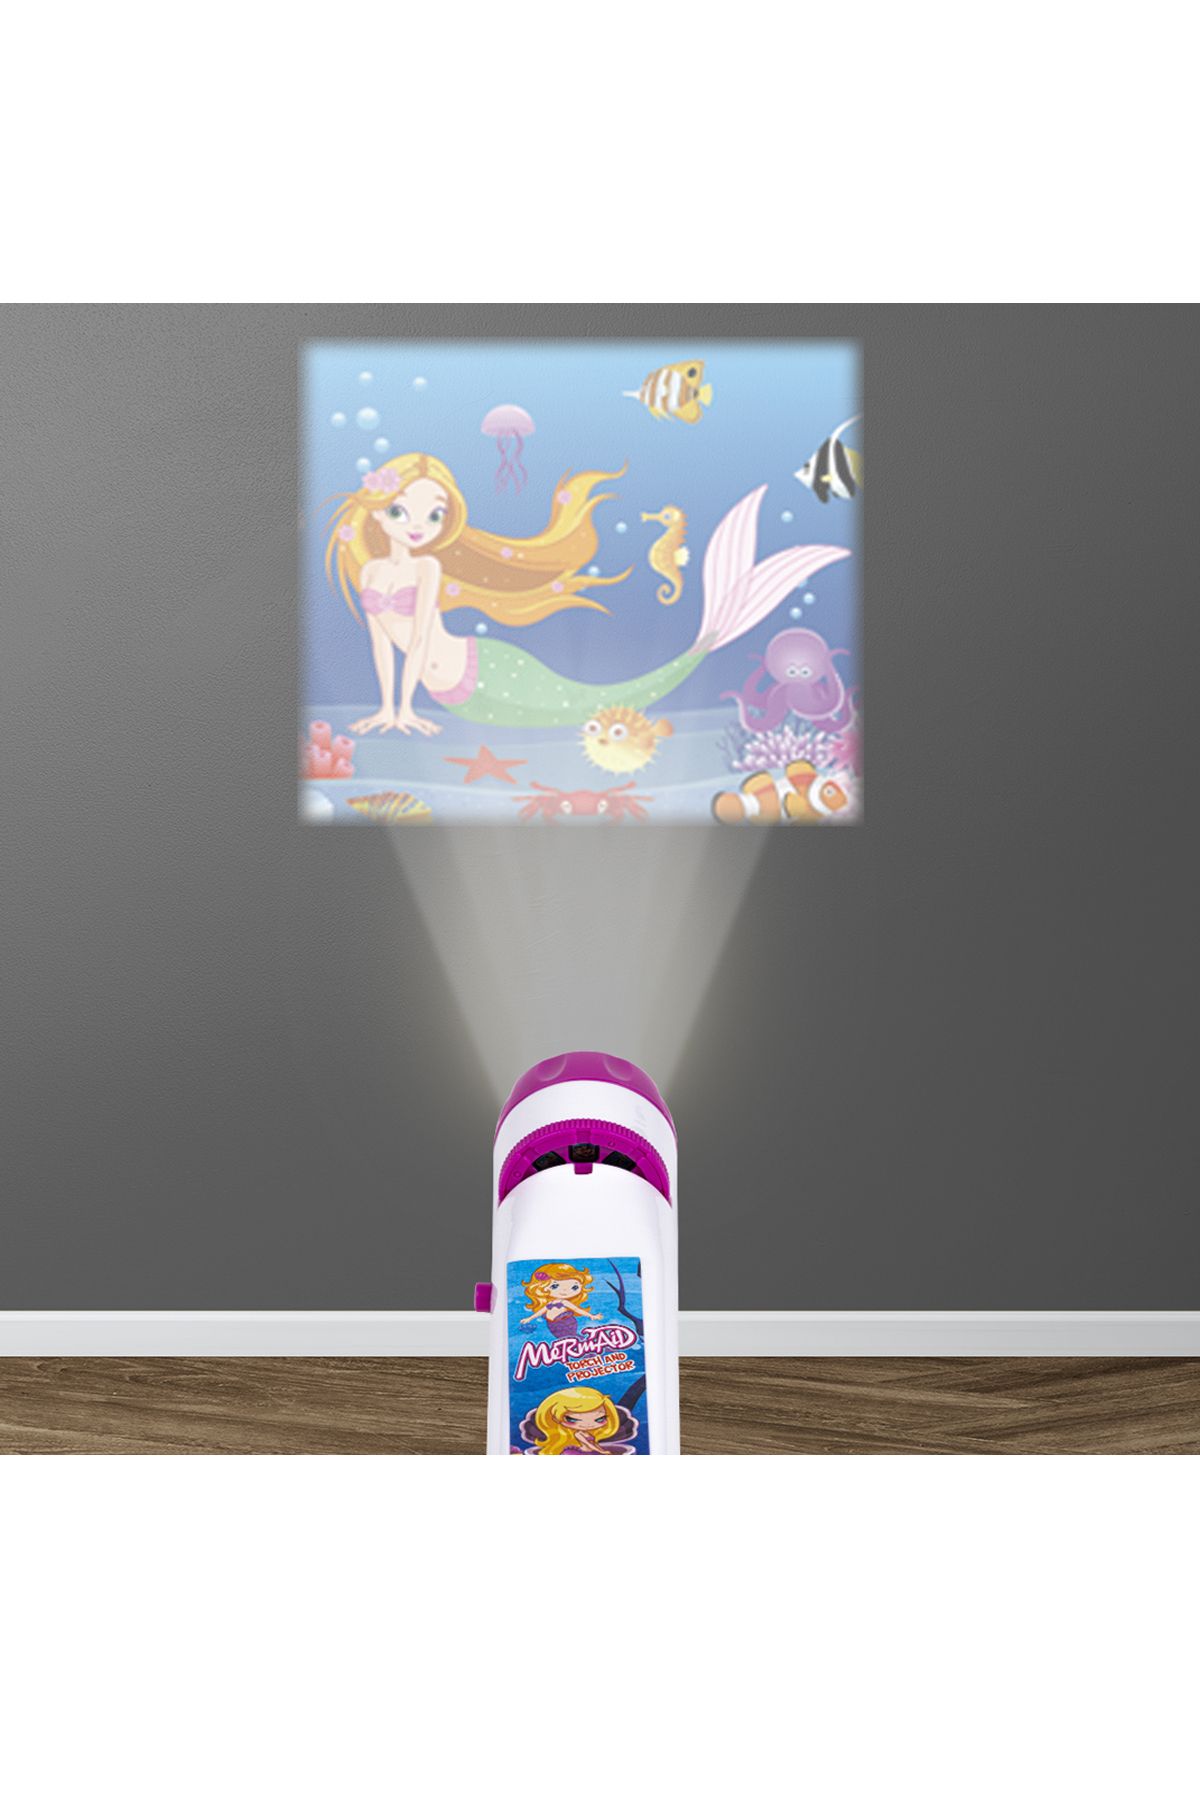 24 Resimli Torch Projektör El Feneri Projektör Yansıtma Erken Eğitim Oyuncağı Deniz Kızı Mermaid